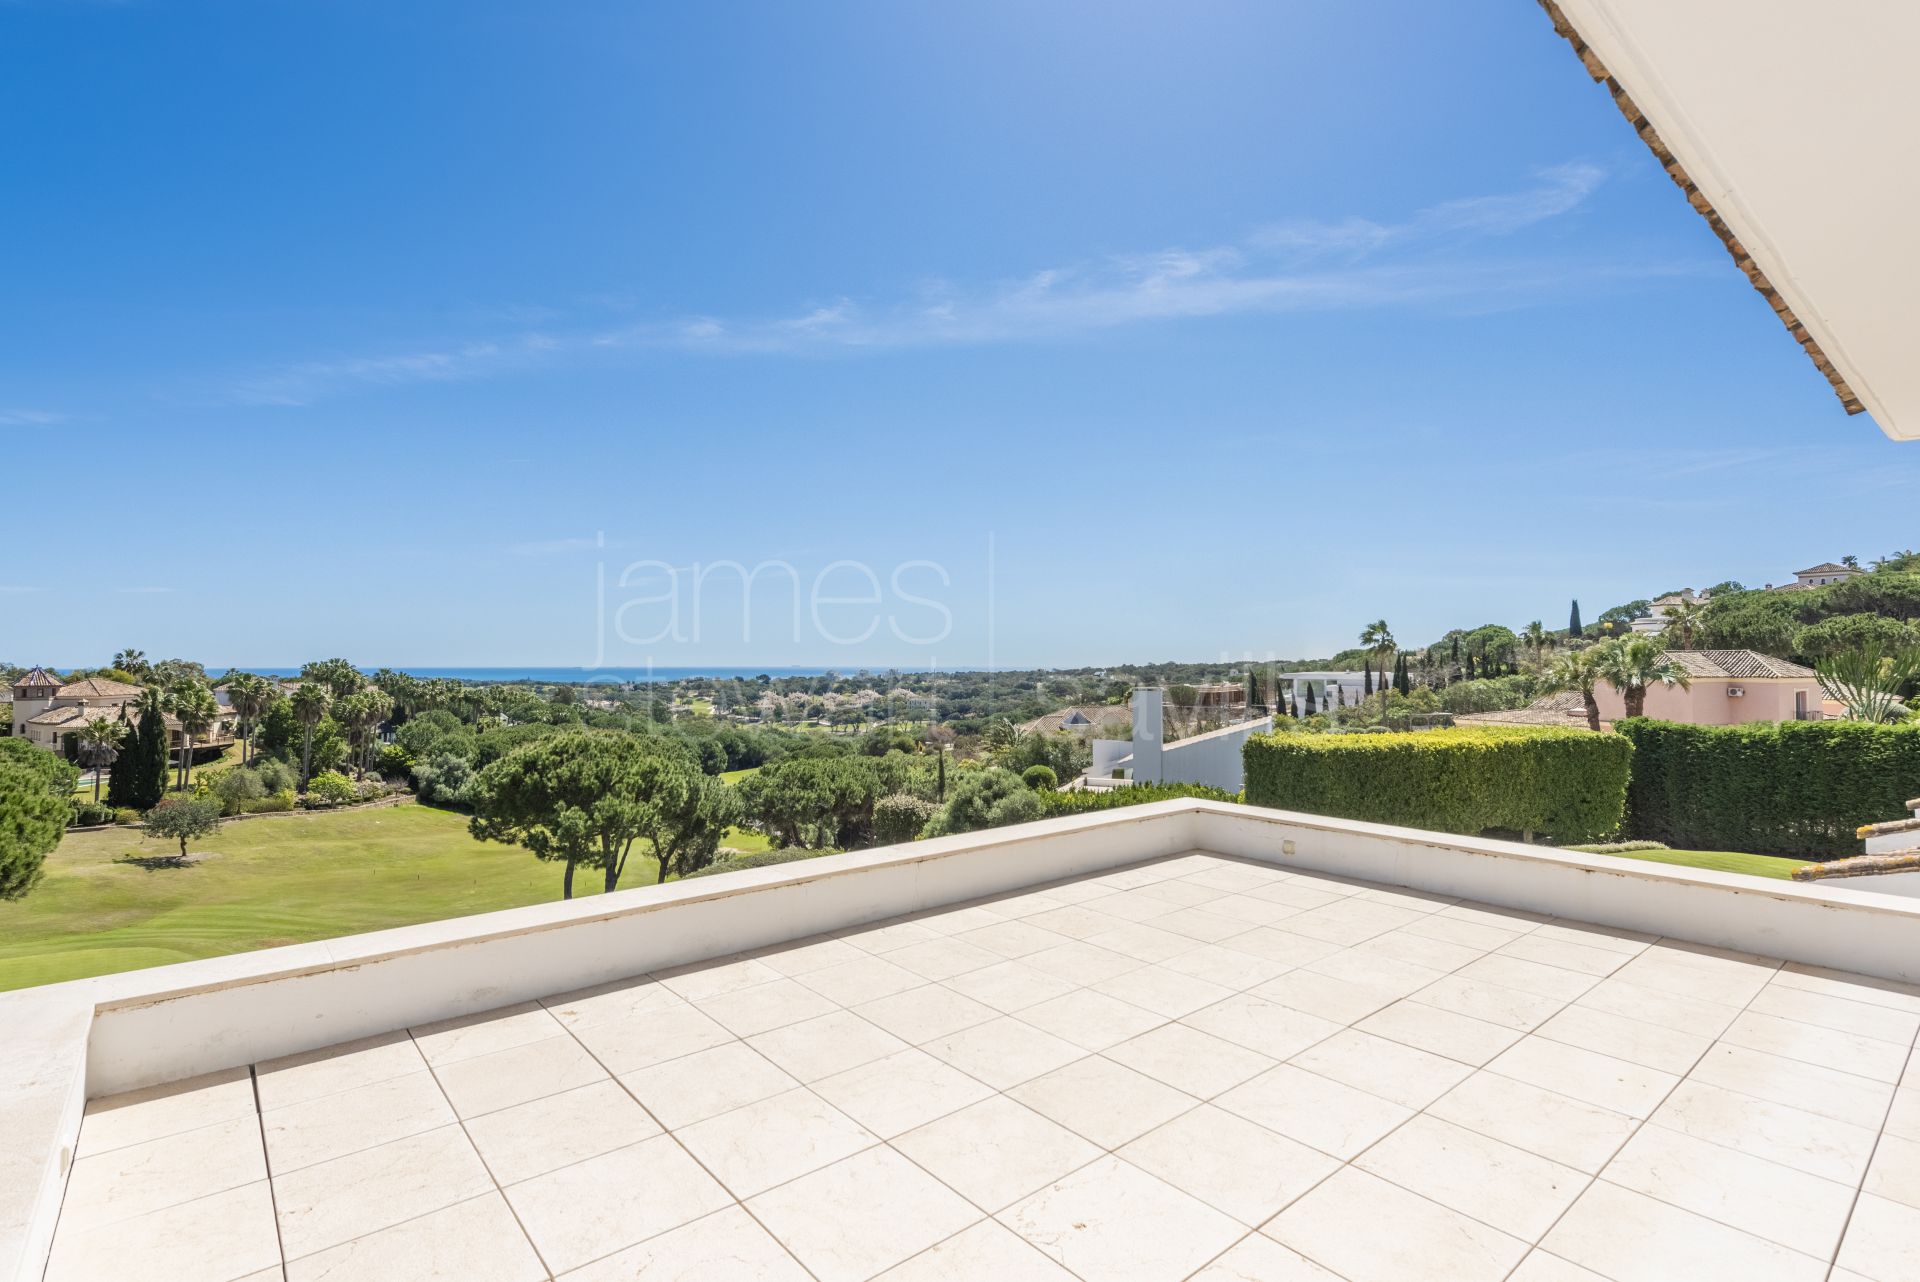 Frontline Almenara Golf villa with sensational sea views.